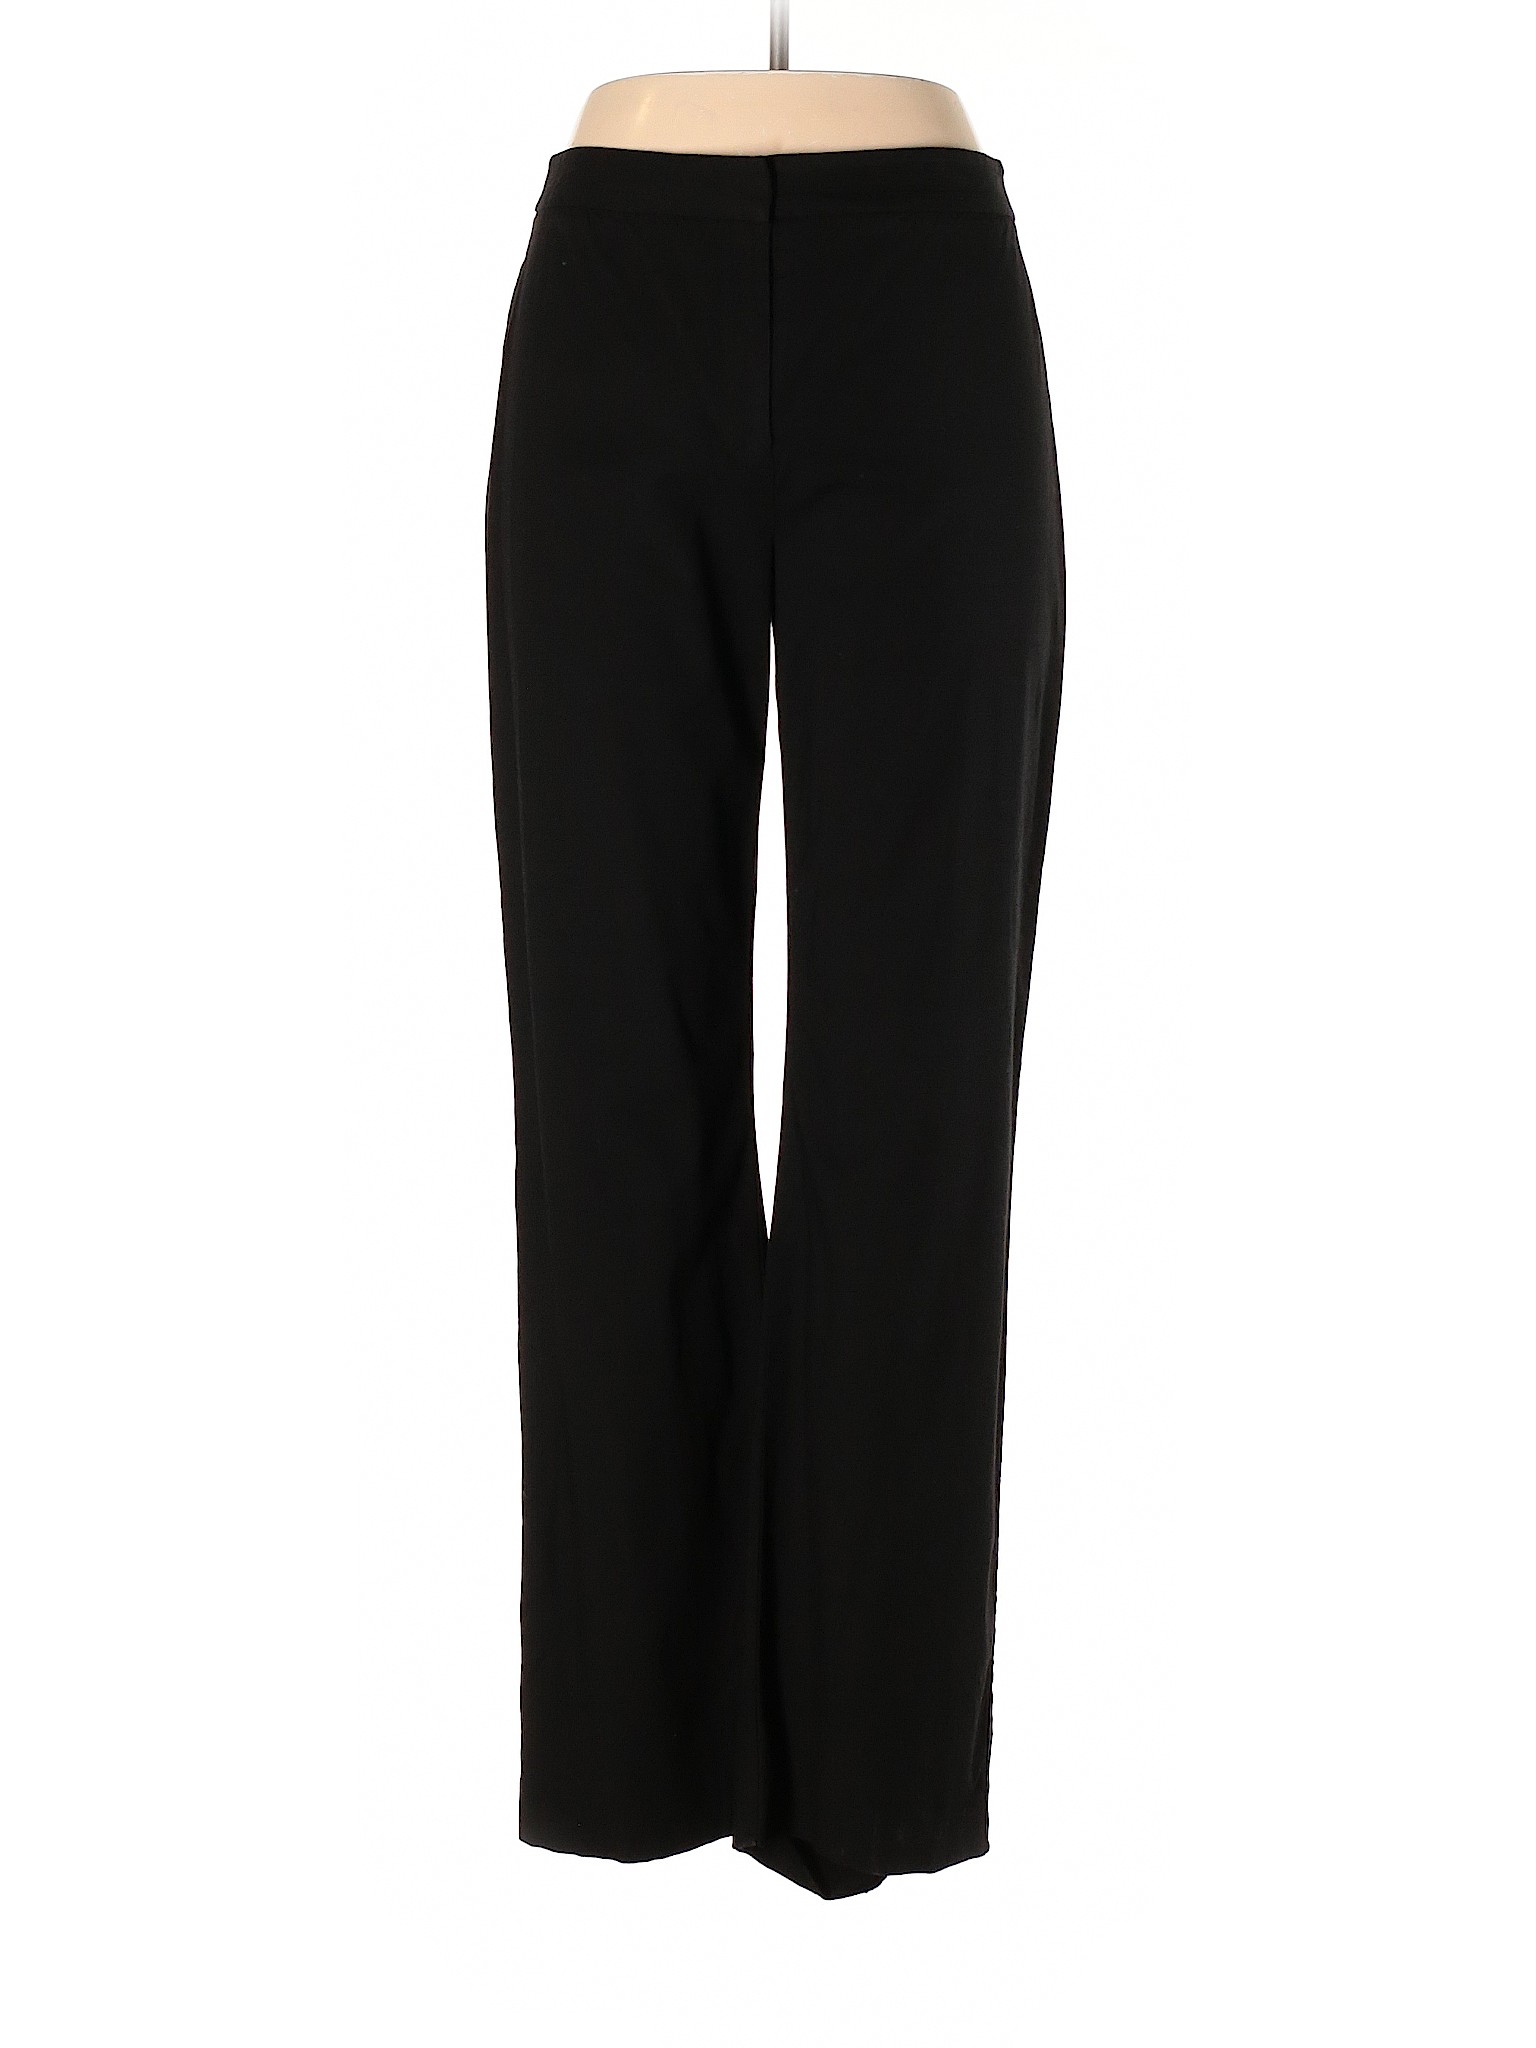 Ann Taylor Women Black Casual Pants 10 | eBay